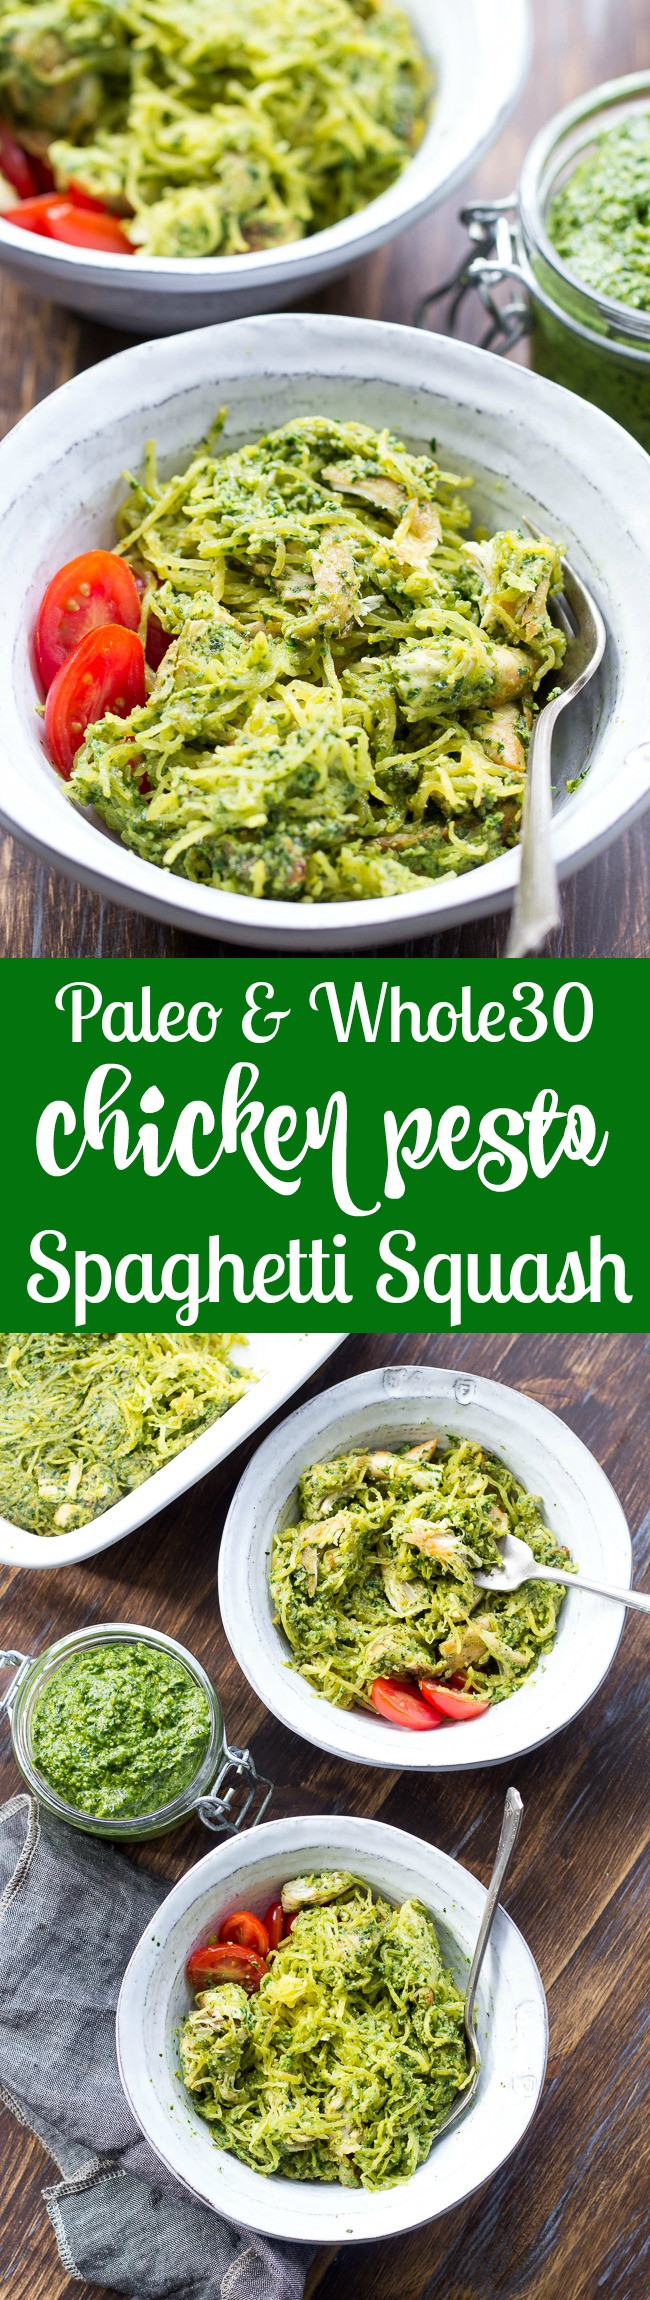 Spaghetti Squash And Chicken Recipes Paleo
 Chicken Pesto Paleo Spaghetti Squash Whole30